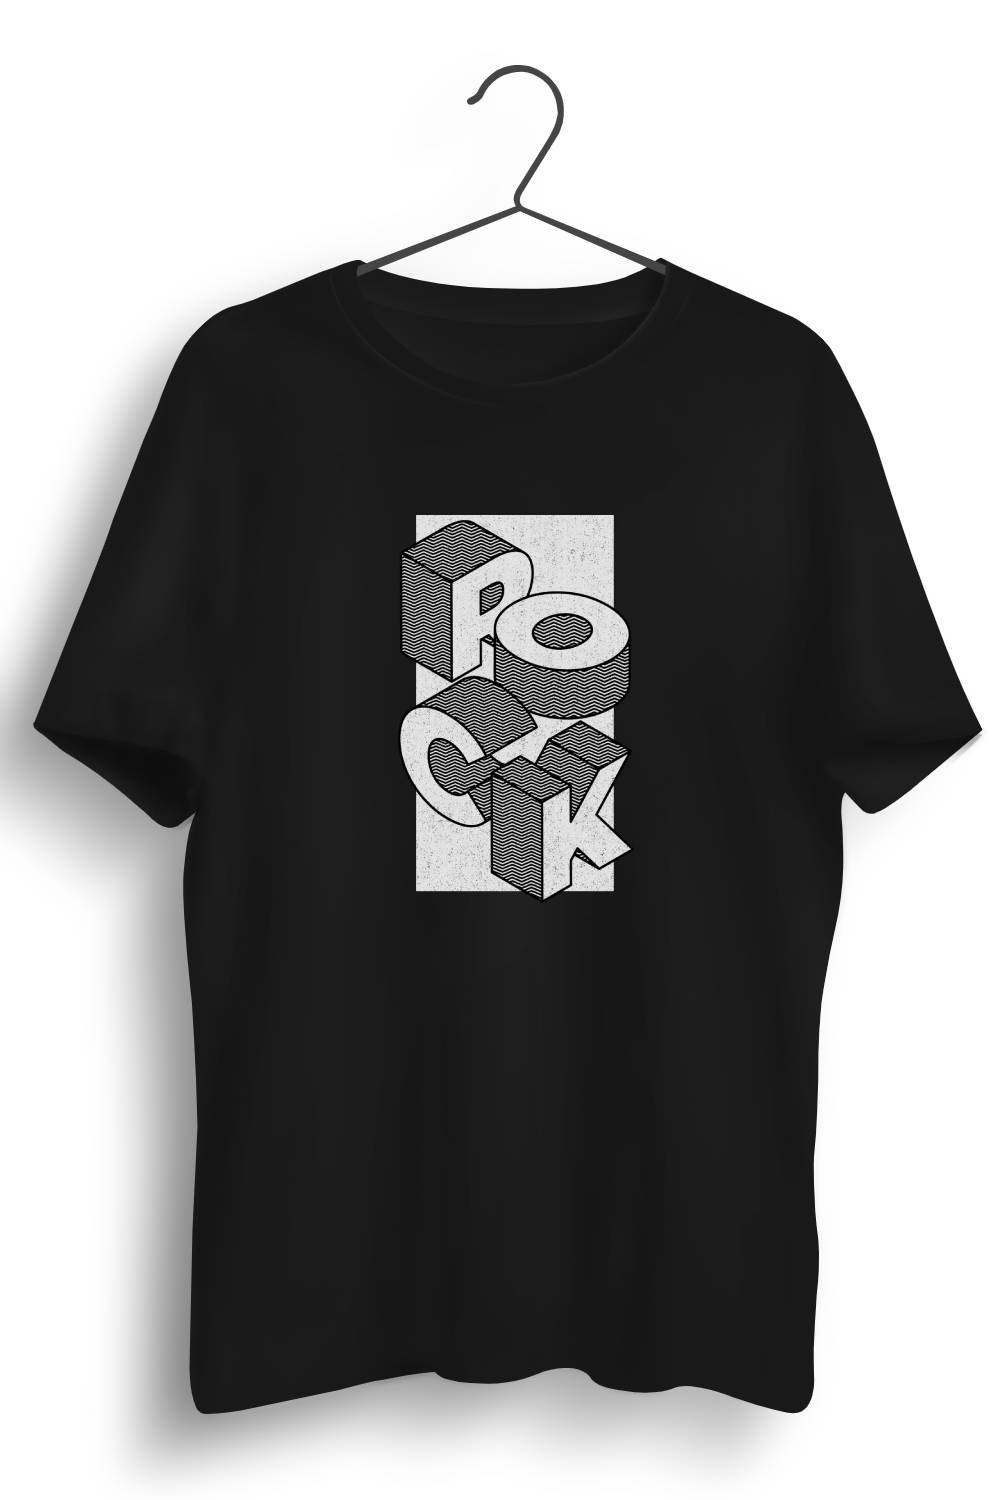 Rock Graphic Printed Black Tshirt